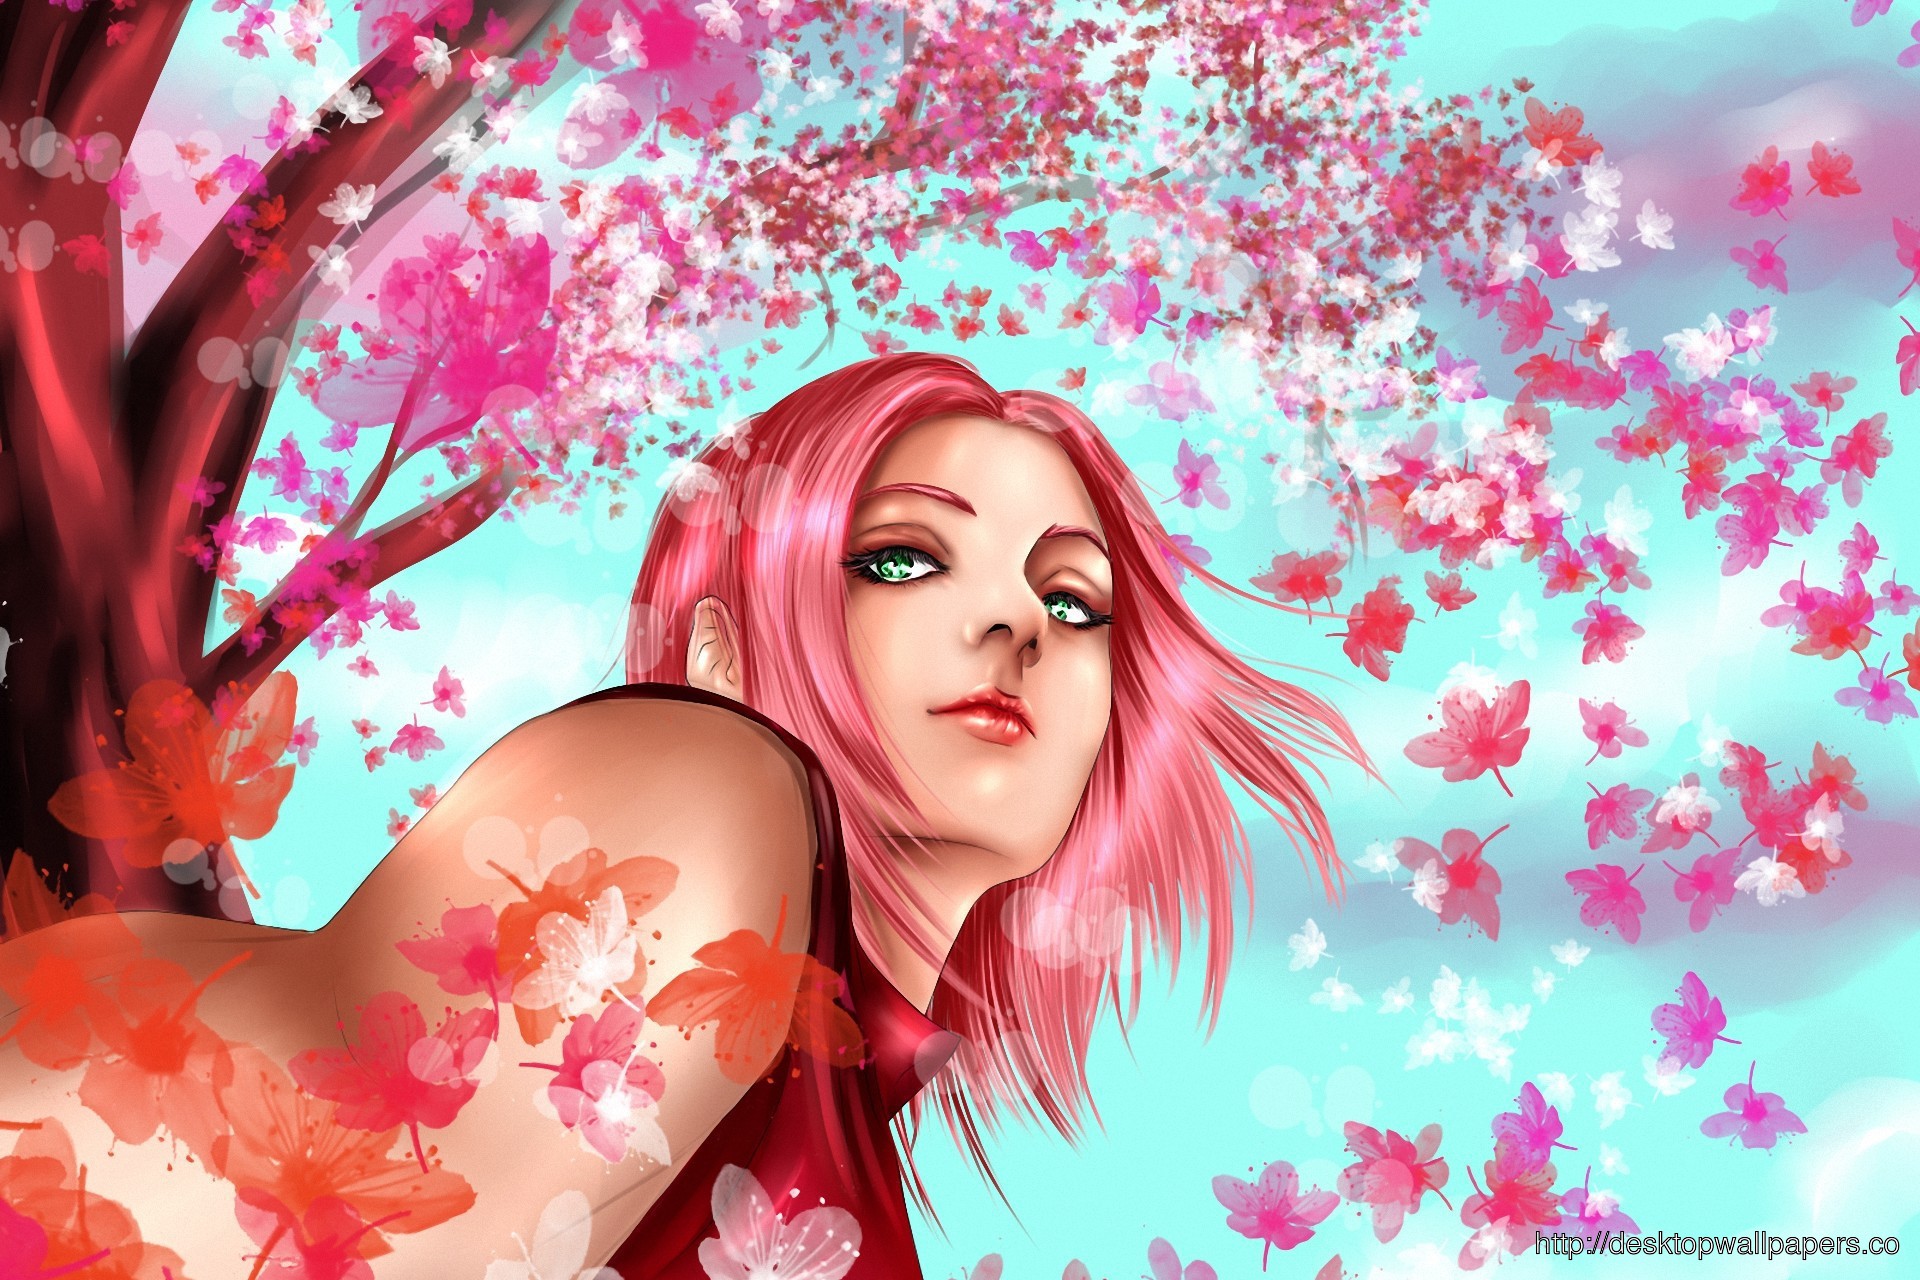 sakura haruno wallpaper,pink,beauty,cg artwork,illustration,spring